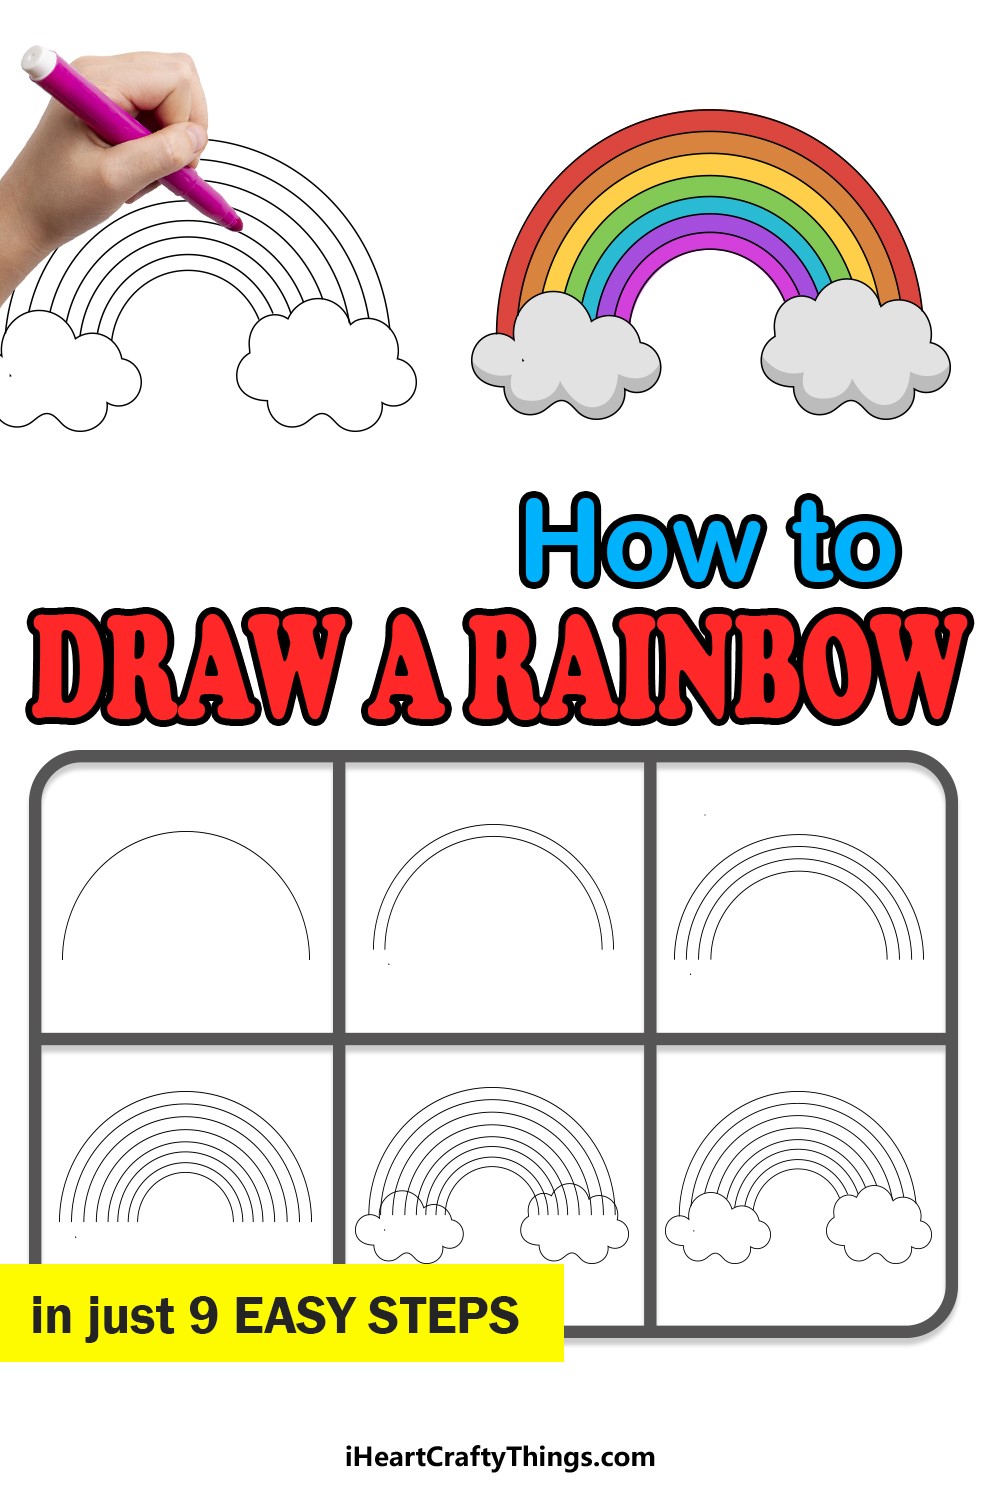 Regenbogenidee 2 zeichnen ideen